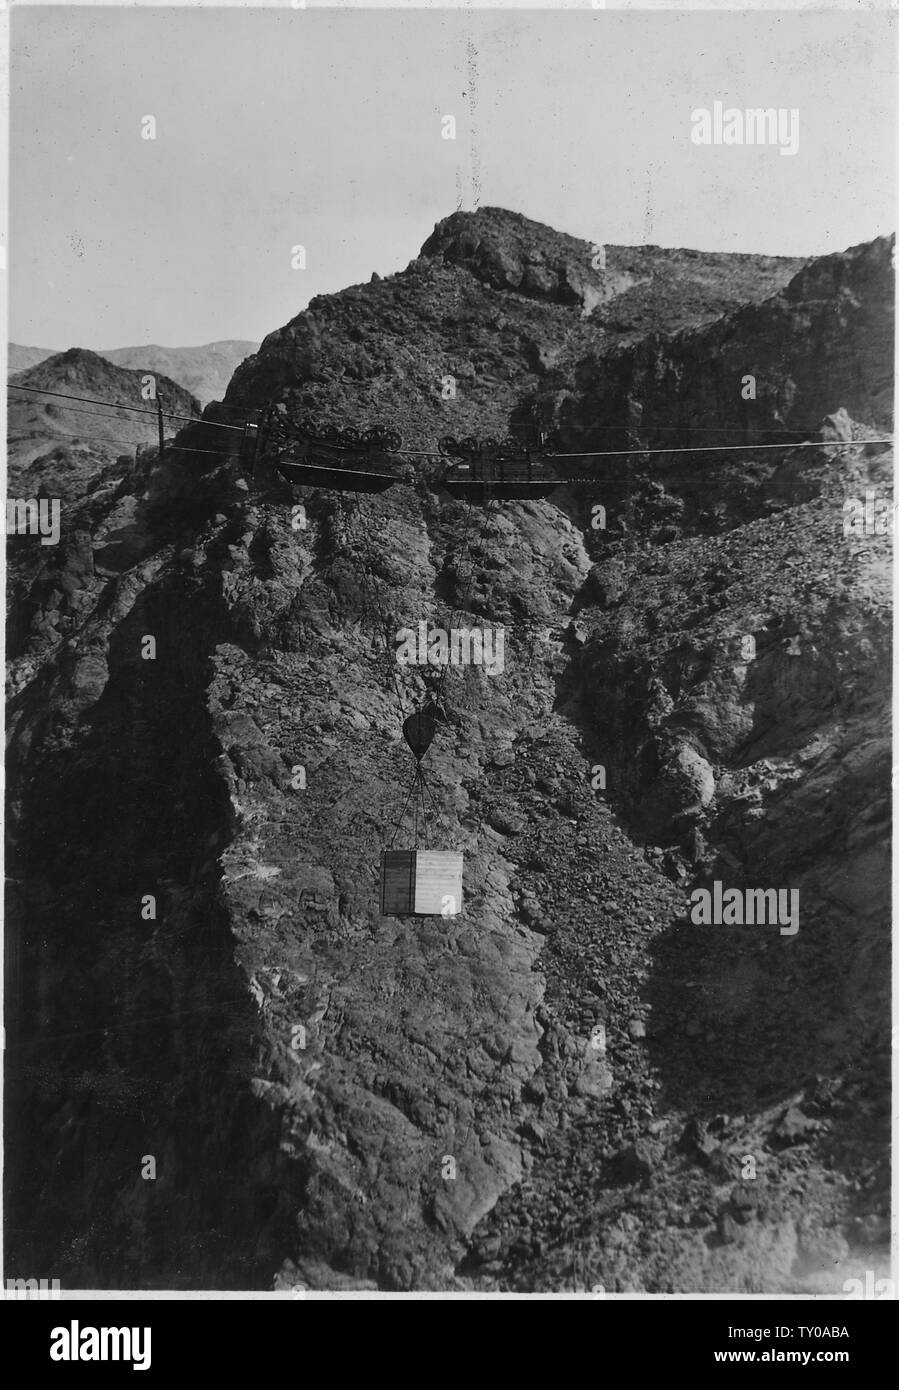 Eigengewicht Test auf einer von sechs Unternehmen 20-Tonne Bergbahnen. Span ist zu einem 20-Tonnen Kapazität und wird mit konkreten Block 26 Tonnen Gewicht getestet.; Umfang und Inhalt: Foto aus Band 2 einer Reihe von Fotoalben dokumentiert den Bau des Hoover Dam, Boulder City, Nevada. Stockfoto